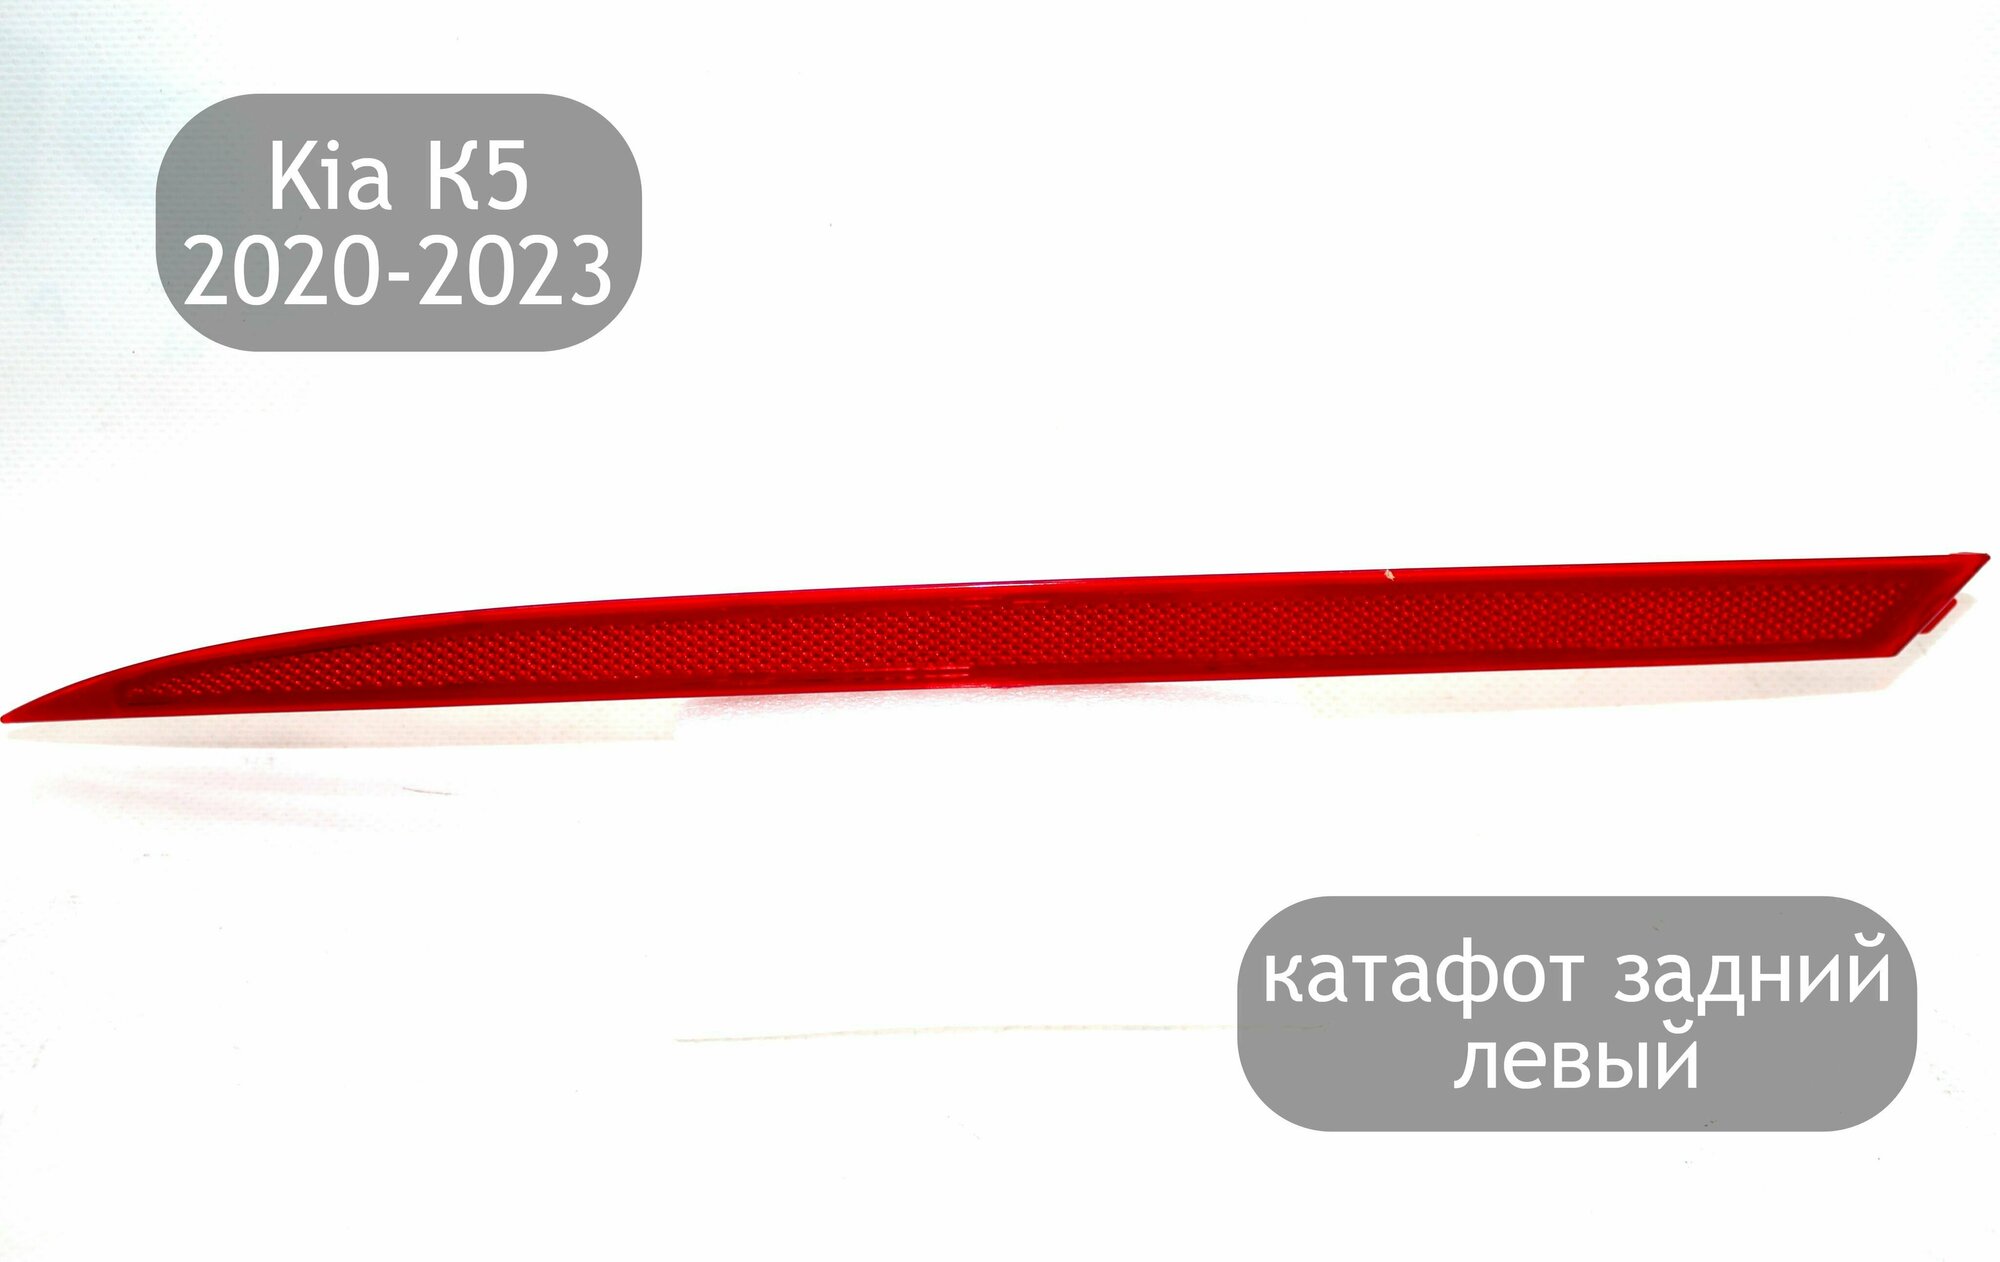 Катафот задний левый для Kia K5 2020-2023